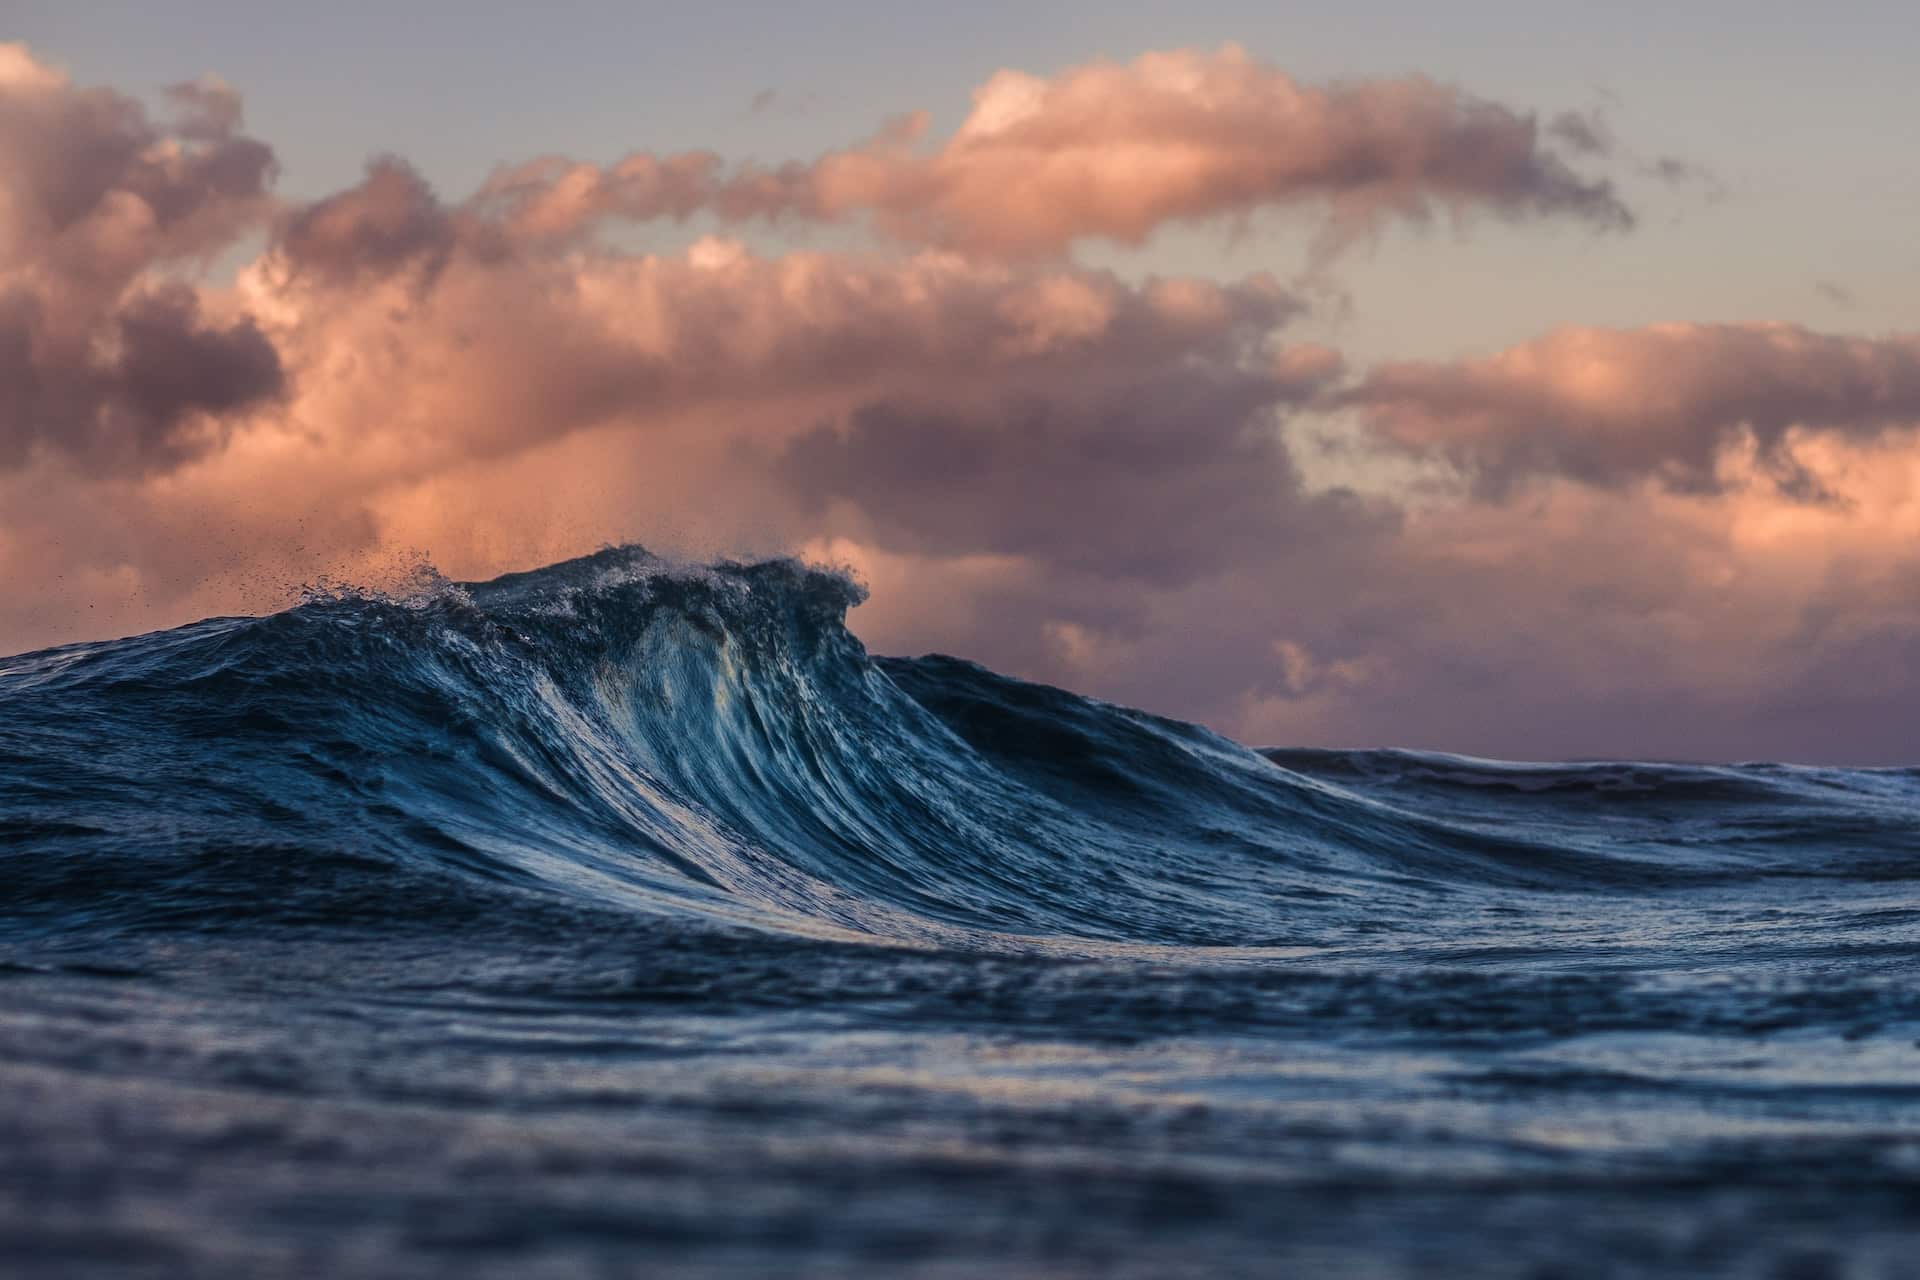 オーストラリアで最も権威のある科学賞に、地球の海流に関する画期的な研究が選出された